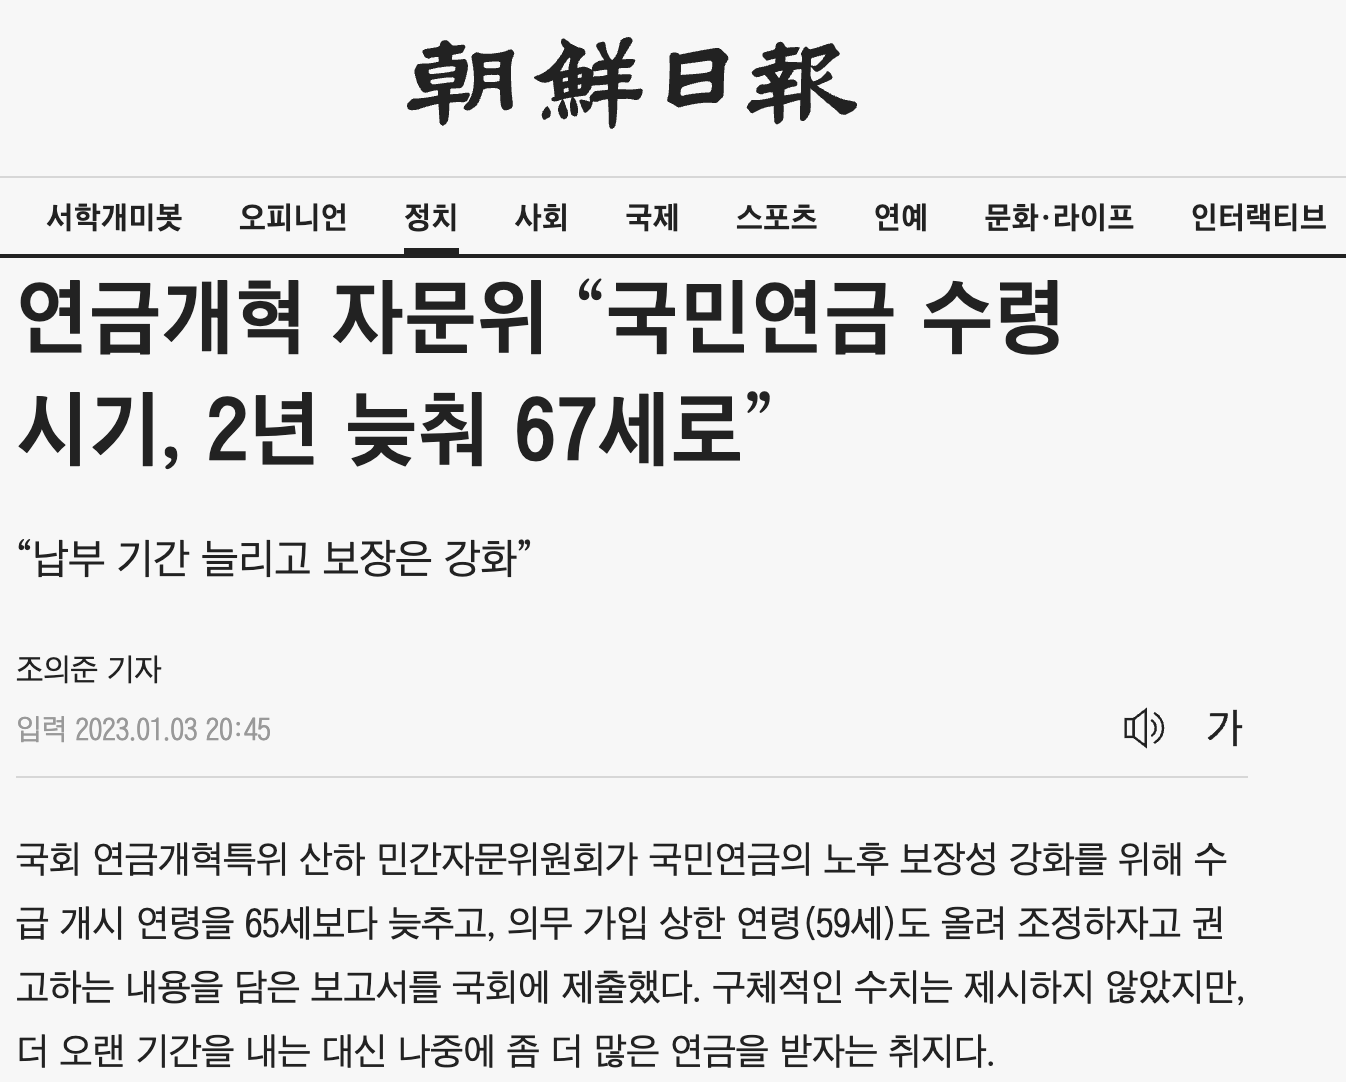 국민연금 수령나이 67세로 미루는 것에 대한 조선일보 뉴스 기사